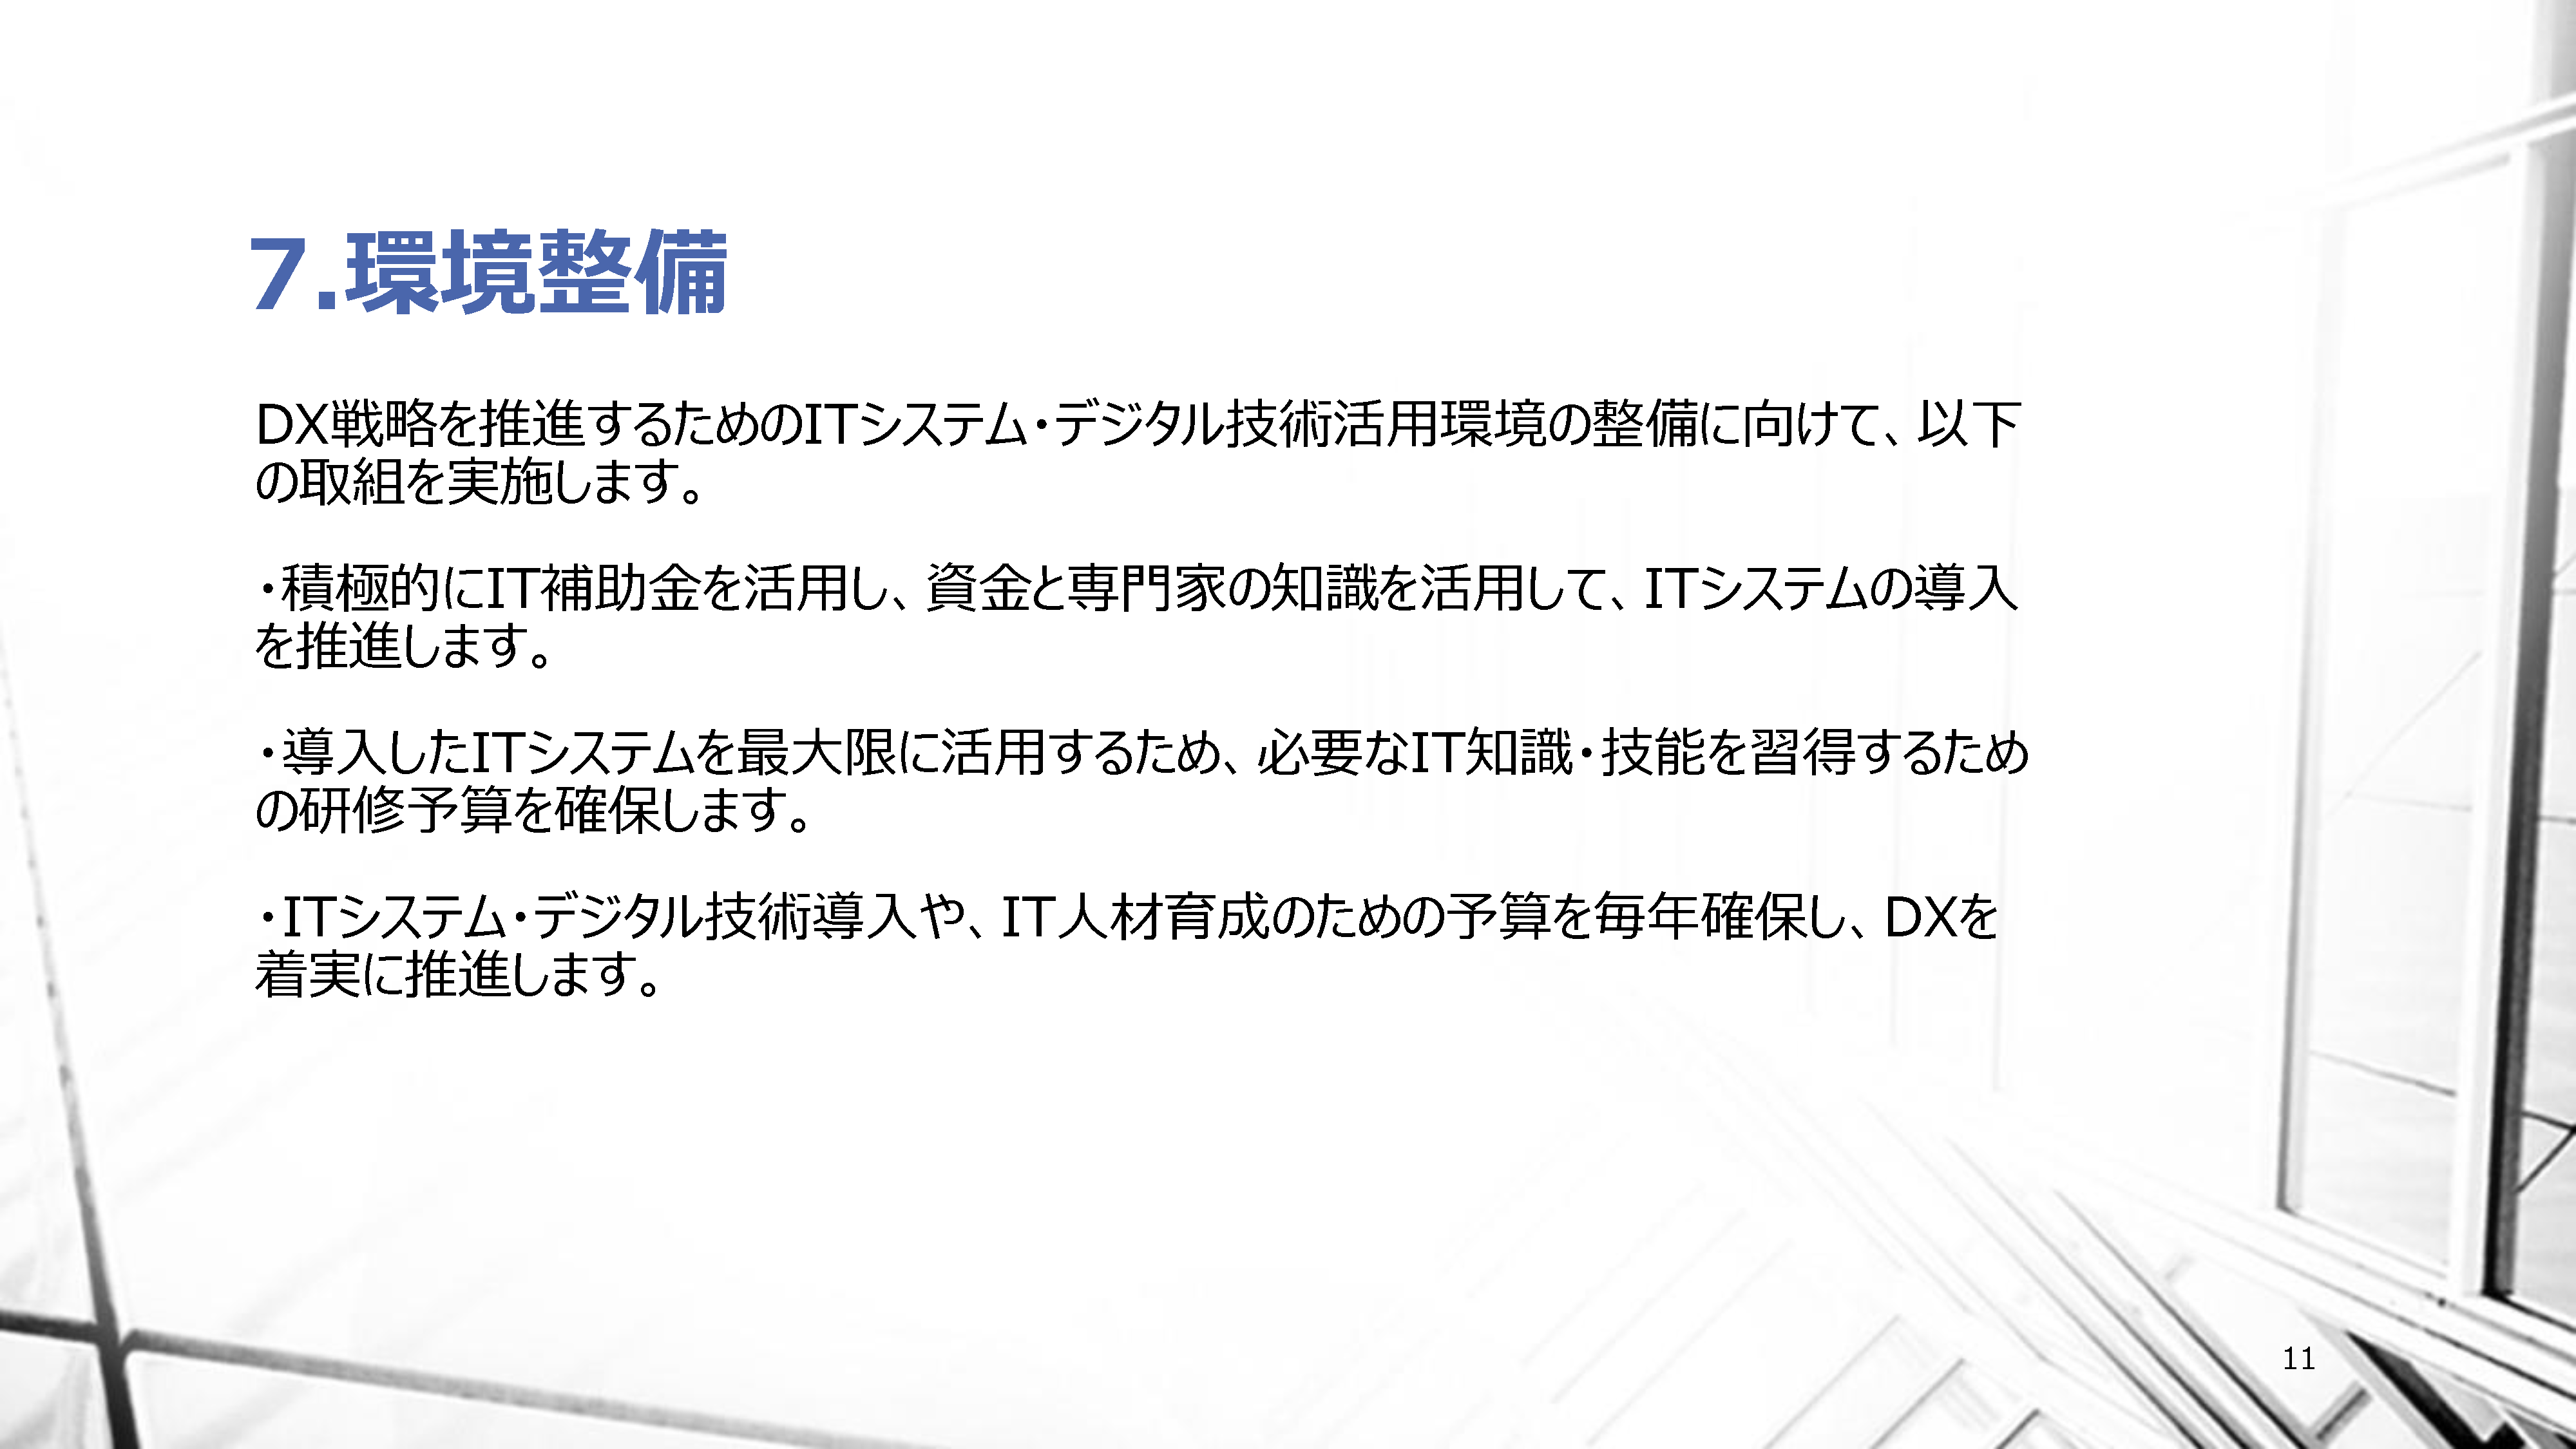 田中工業 DX経営ビジョン11